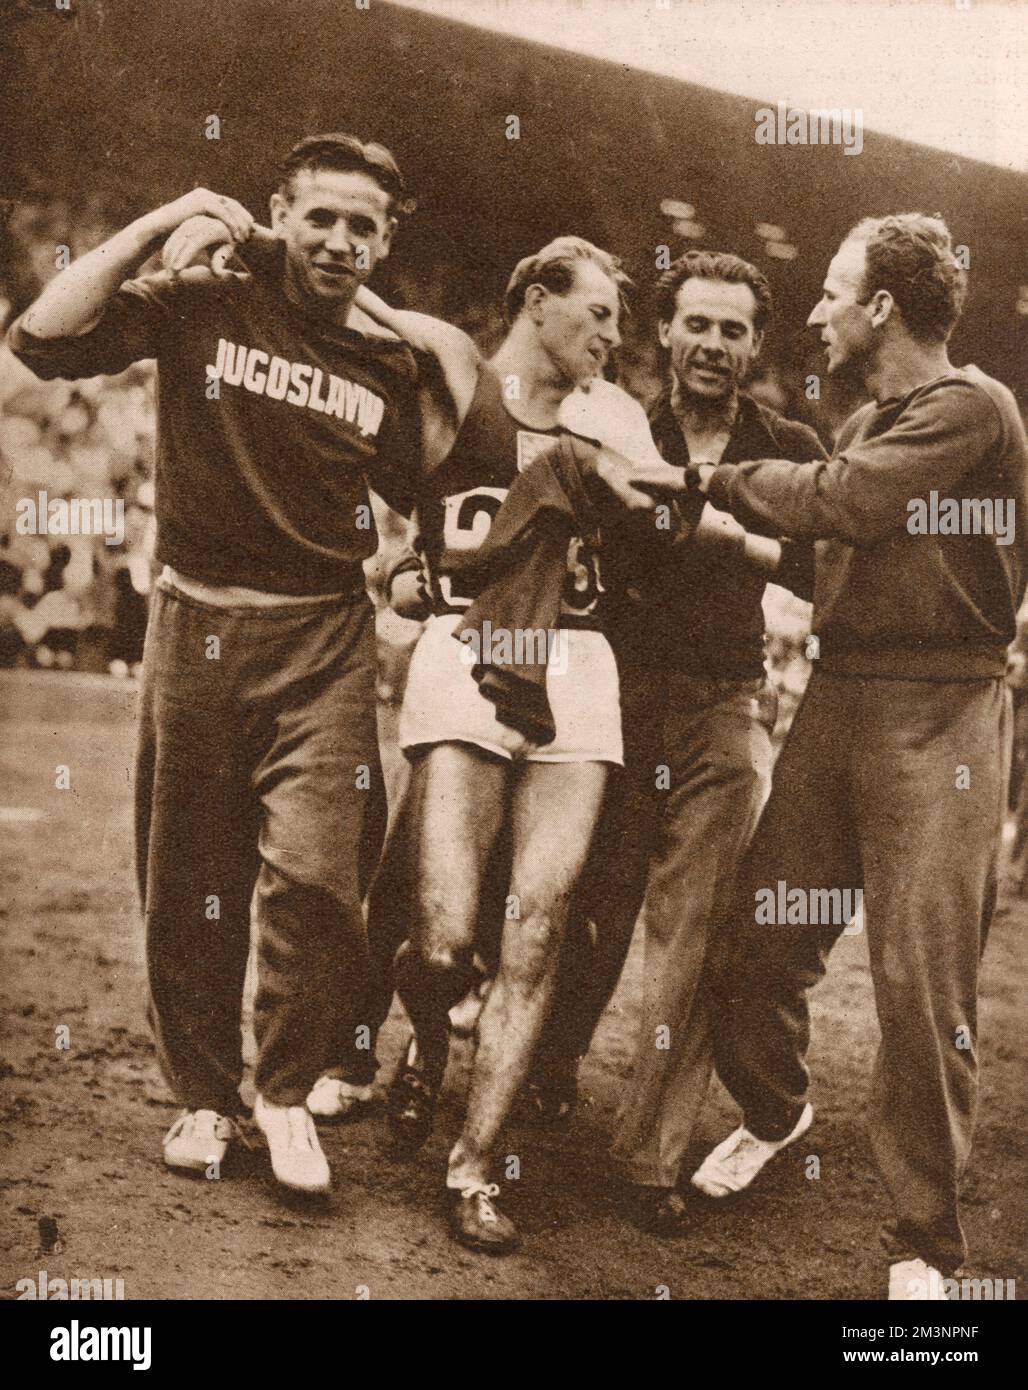 Emil Zatopek (1922 - 2000), tschechischer Langstreckenläufer, stellte sich nach seinem Sieg im 10.000m. Rennen bei den Olympischen Spielen 1948 in London vor, nur das zweite Rennen, das er je auf dieser Strecke gelaufen war. Vier Jahre später gewann er bei den Spielen in Helsinki Gold in den 5000-Meter- und 10.000-Meter-Läufen, aber seine letzte Medaille kam, als er sich in letzter Minute entschied, am ersten Marathon seines Lebens teilzunehmen. Er erhielt den Spitznamen „tschechische Lokomotive“ für seine vielen Goldstücke. Datum: 1948 Stockfoto